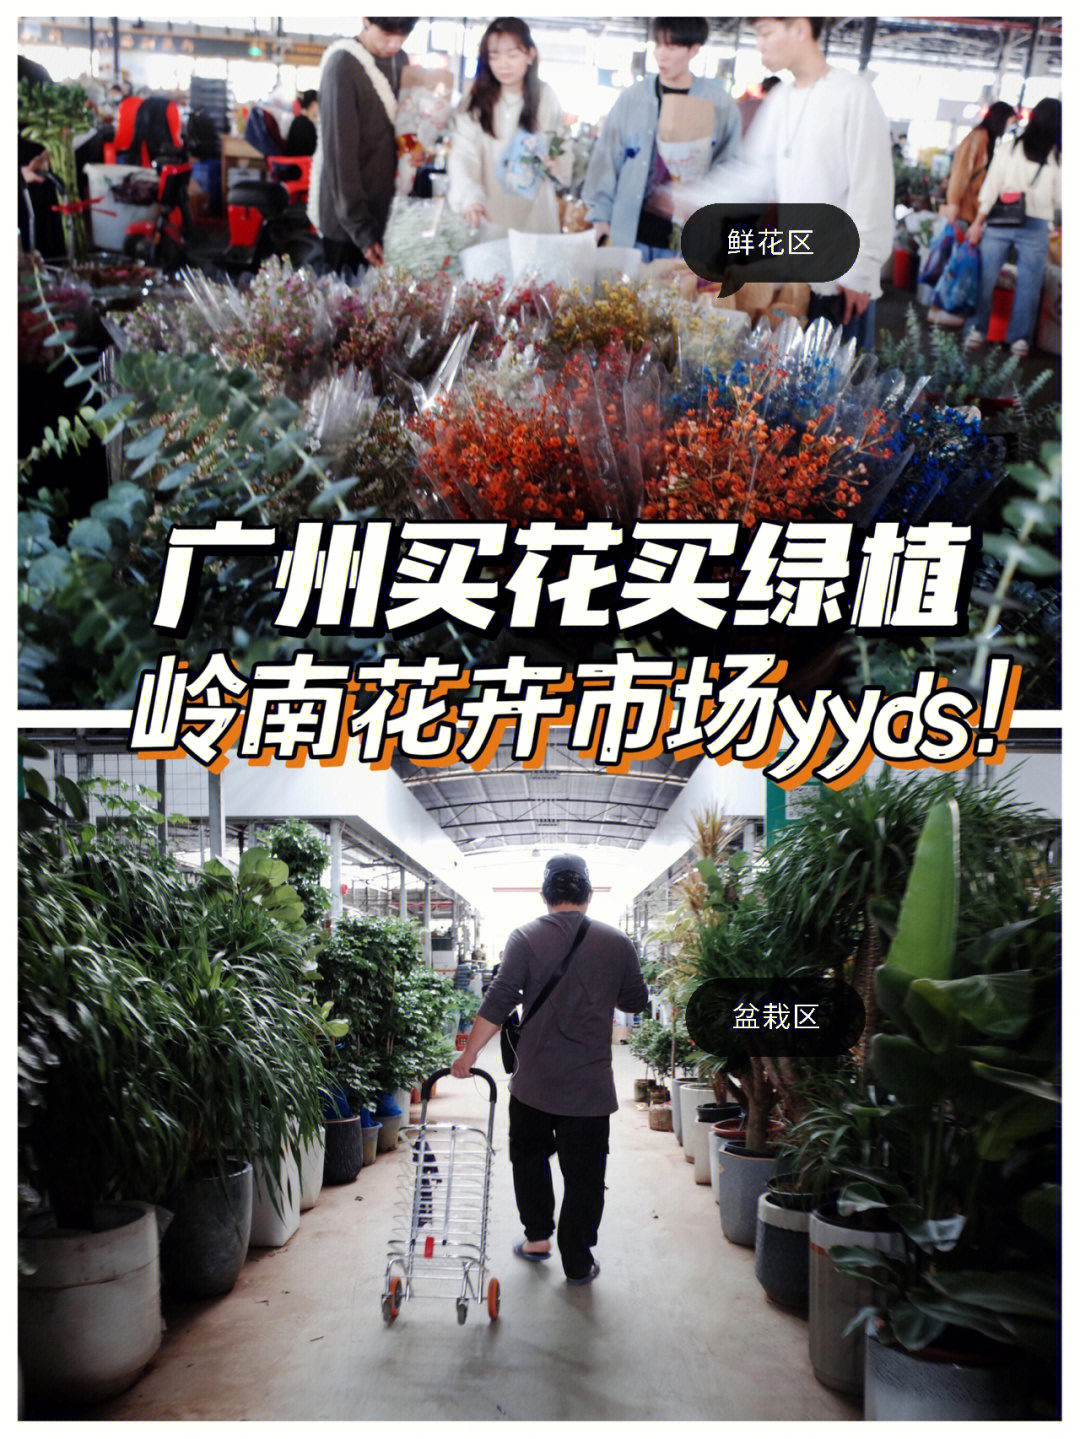 广州岭南花卉市场,买到超满意的马醉木!